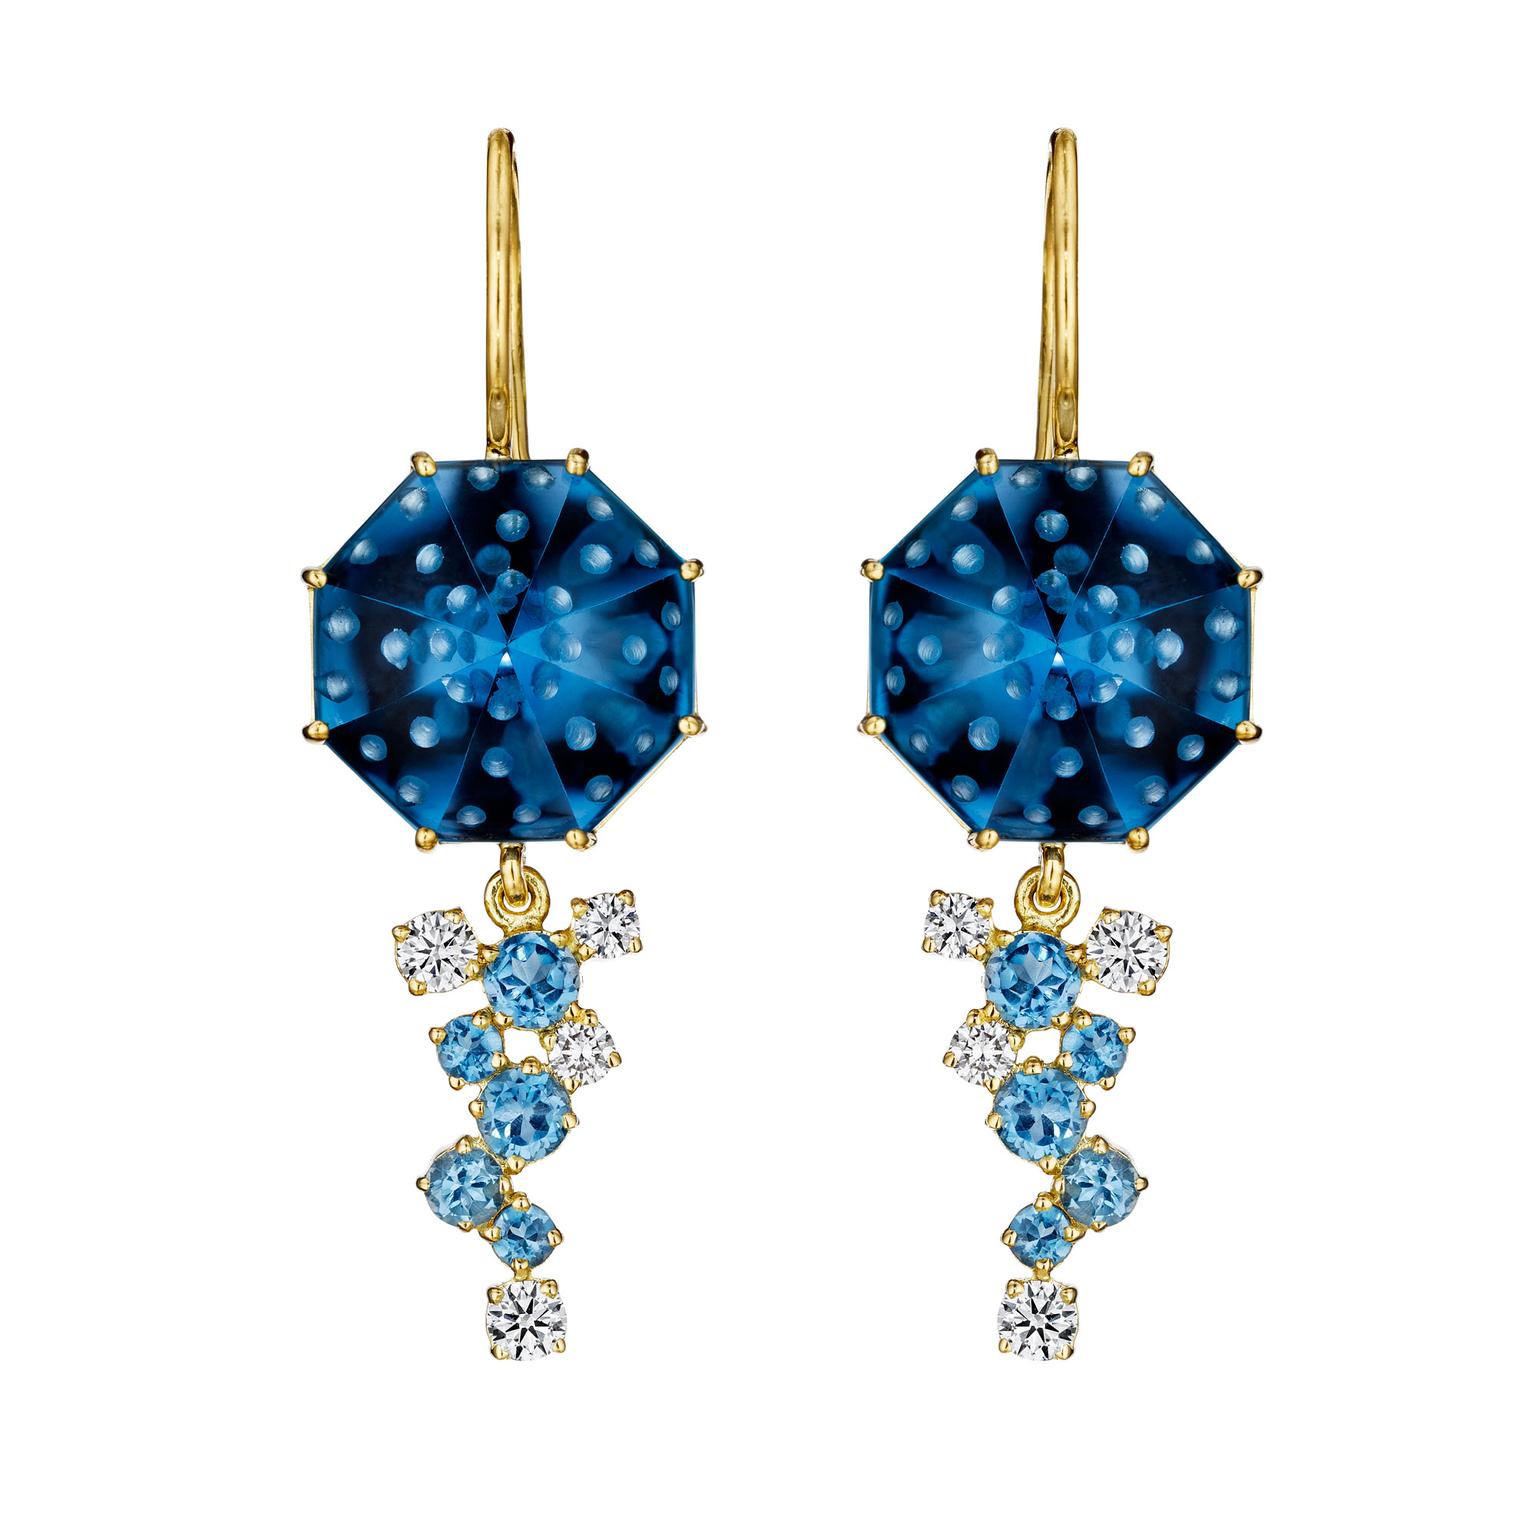 Madstone Design Bubble Ice blue topaz earrings